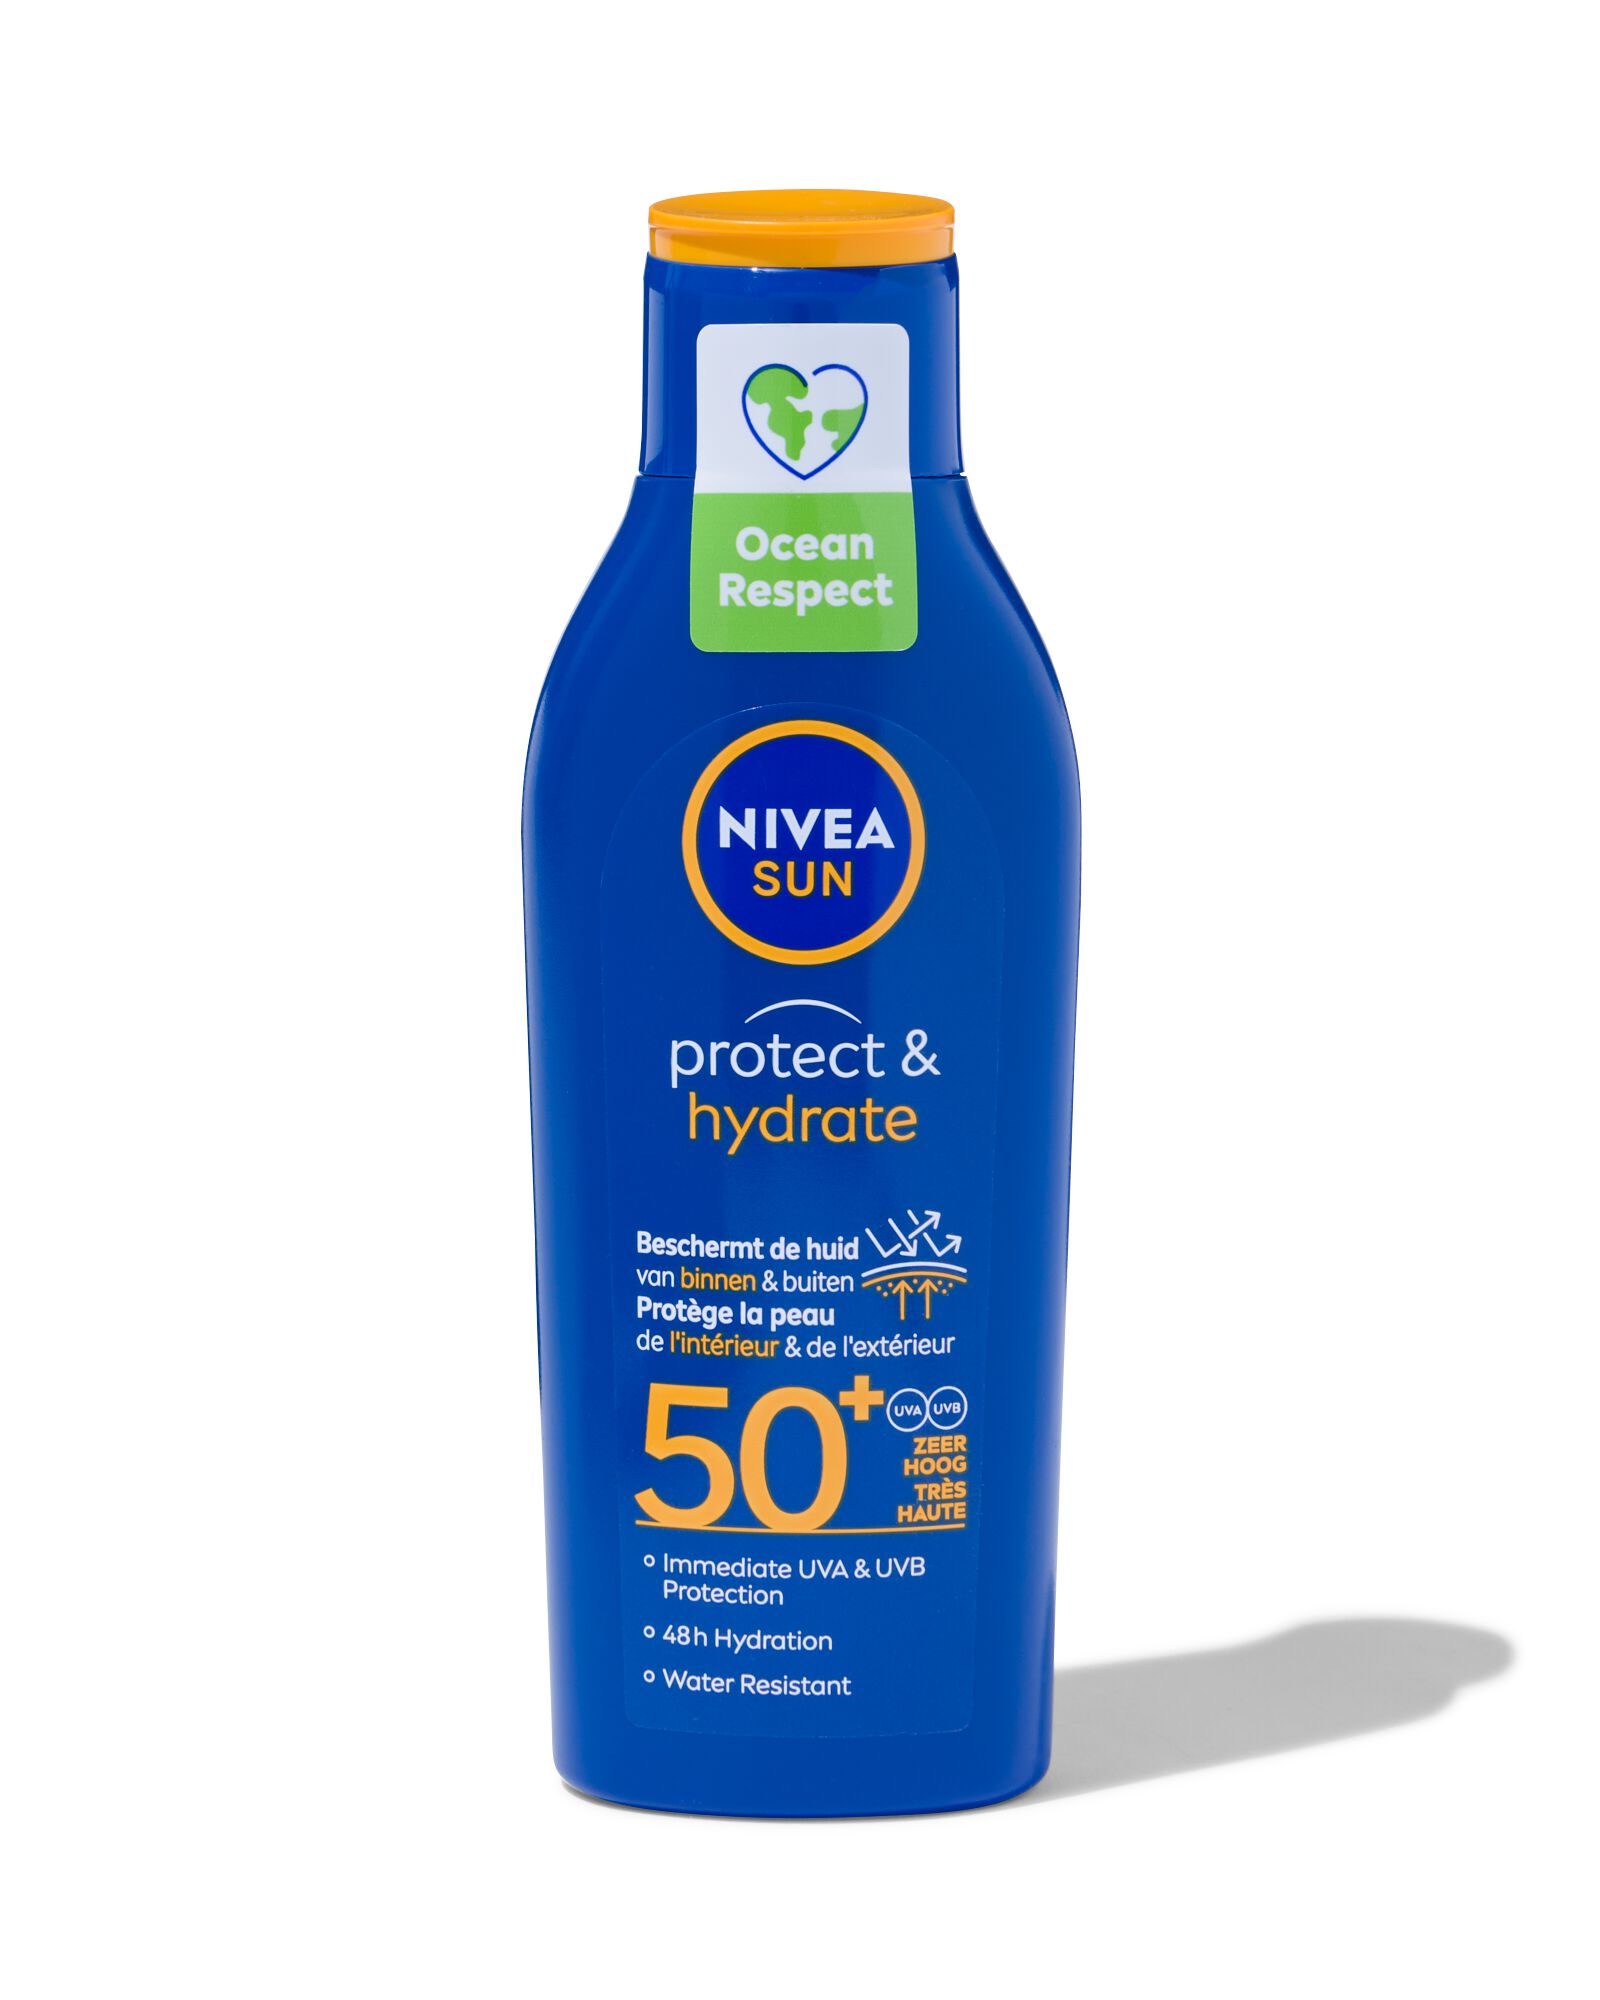 NIVEA SUN protect & hydrate zonnemelk SPF50+ 200ml - 11610907 - HEMA